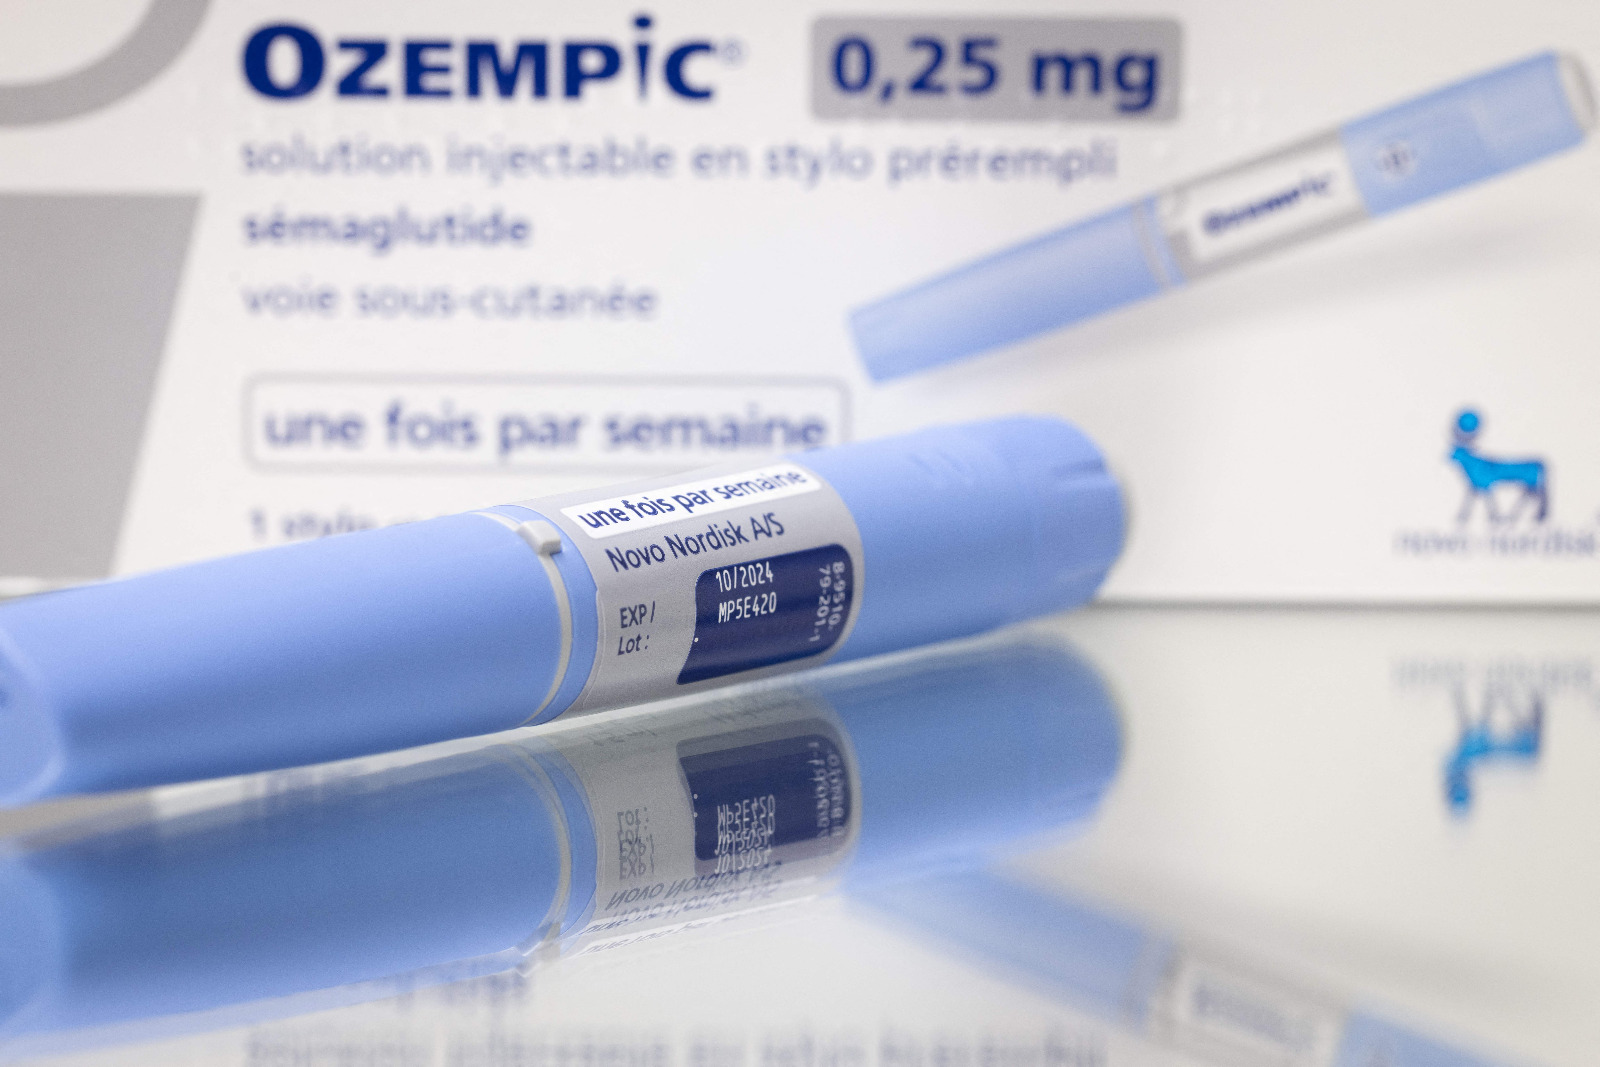 Adelgazar con Ozempic® - Medicamento para la diabetes tipo 2